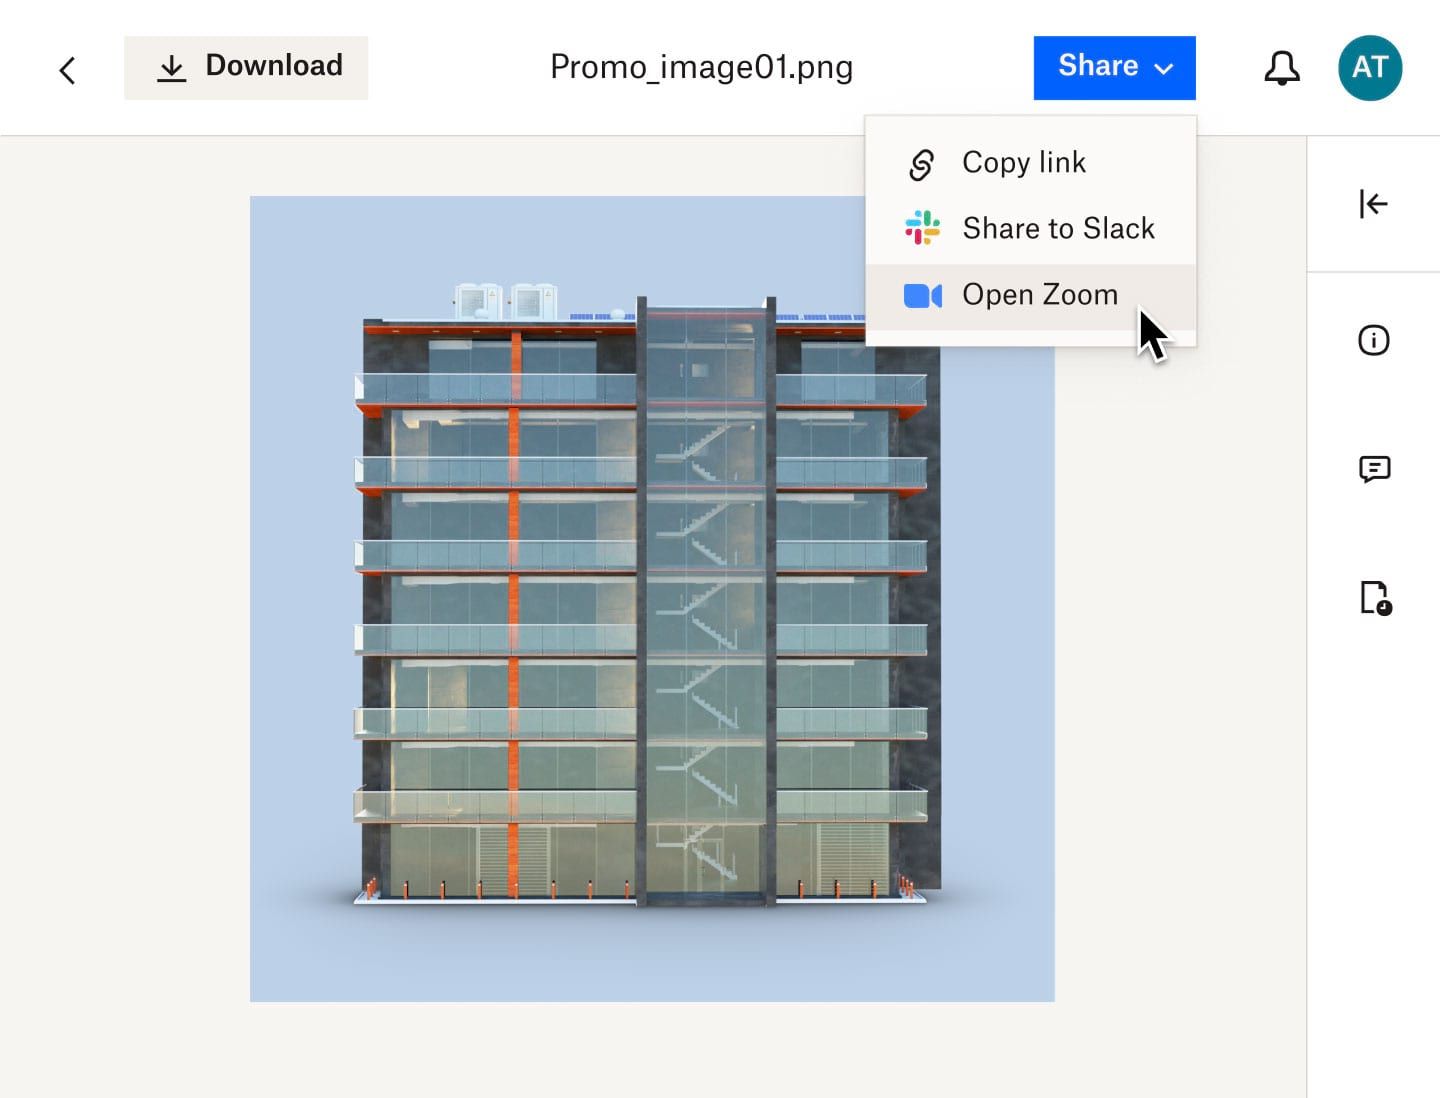 En bruger, der klikker på en rullemenu for at dele en gengivelse af tværsnittet af en bygning på Zoom